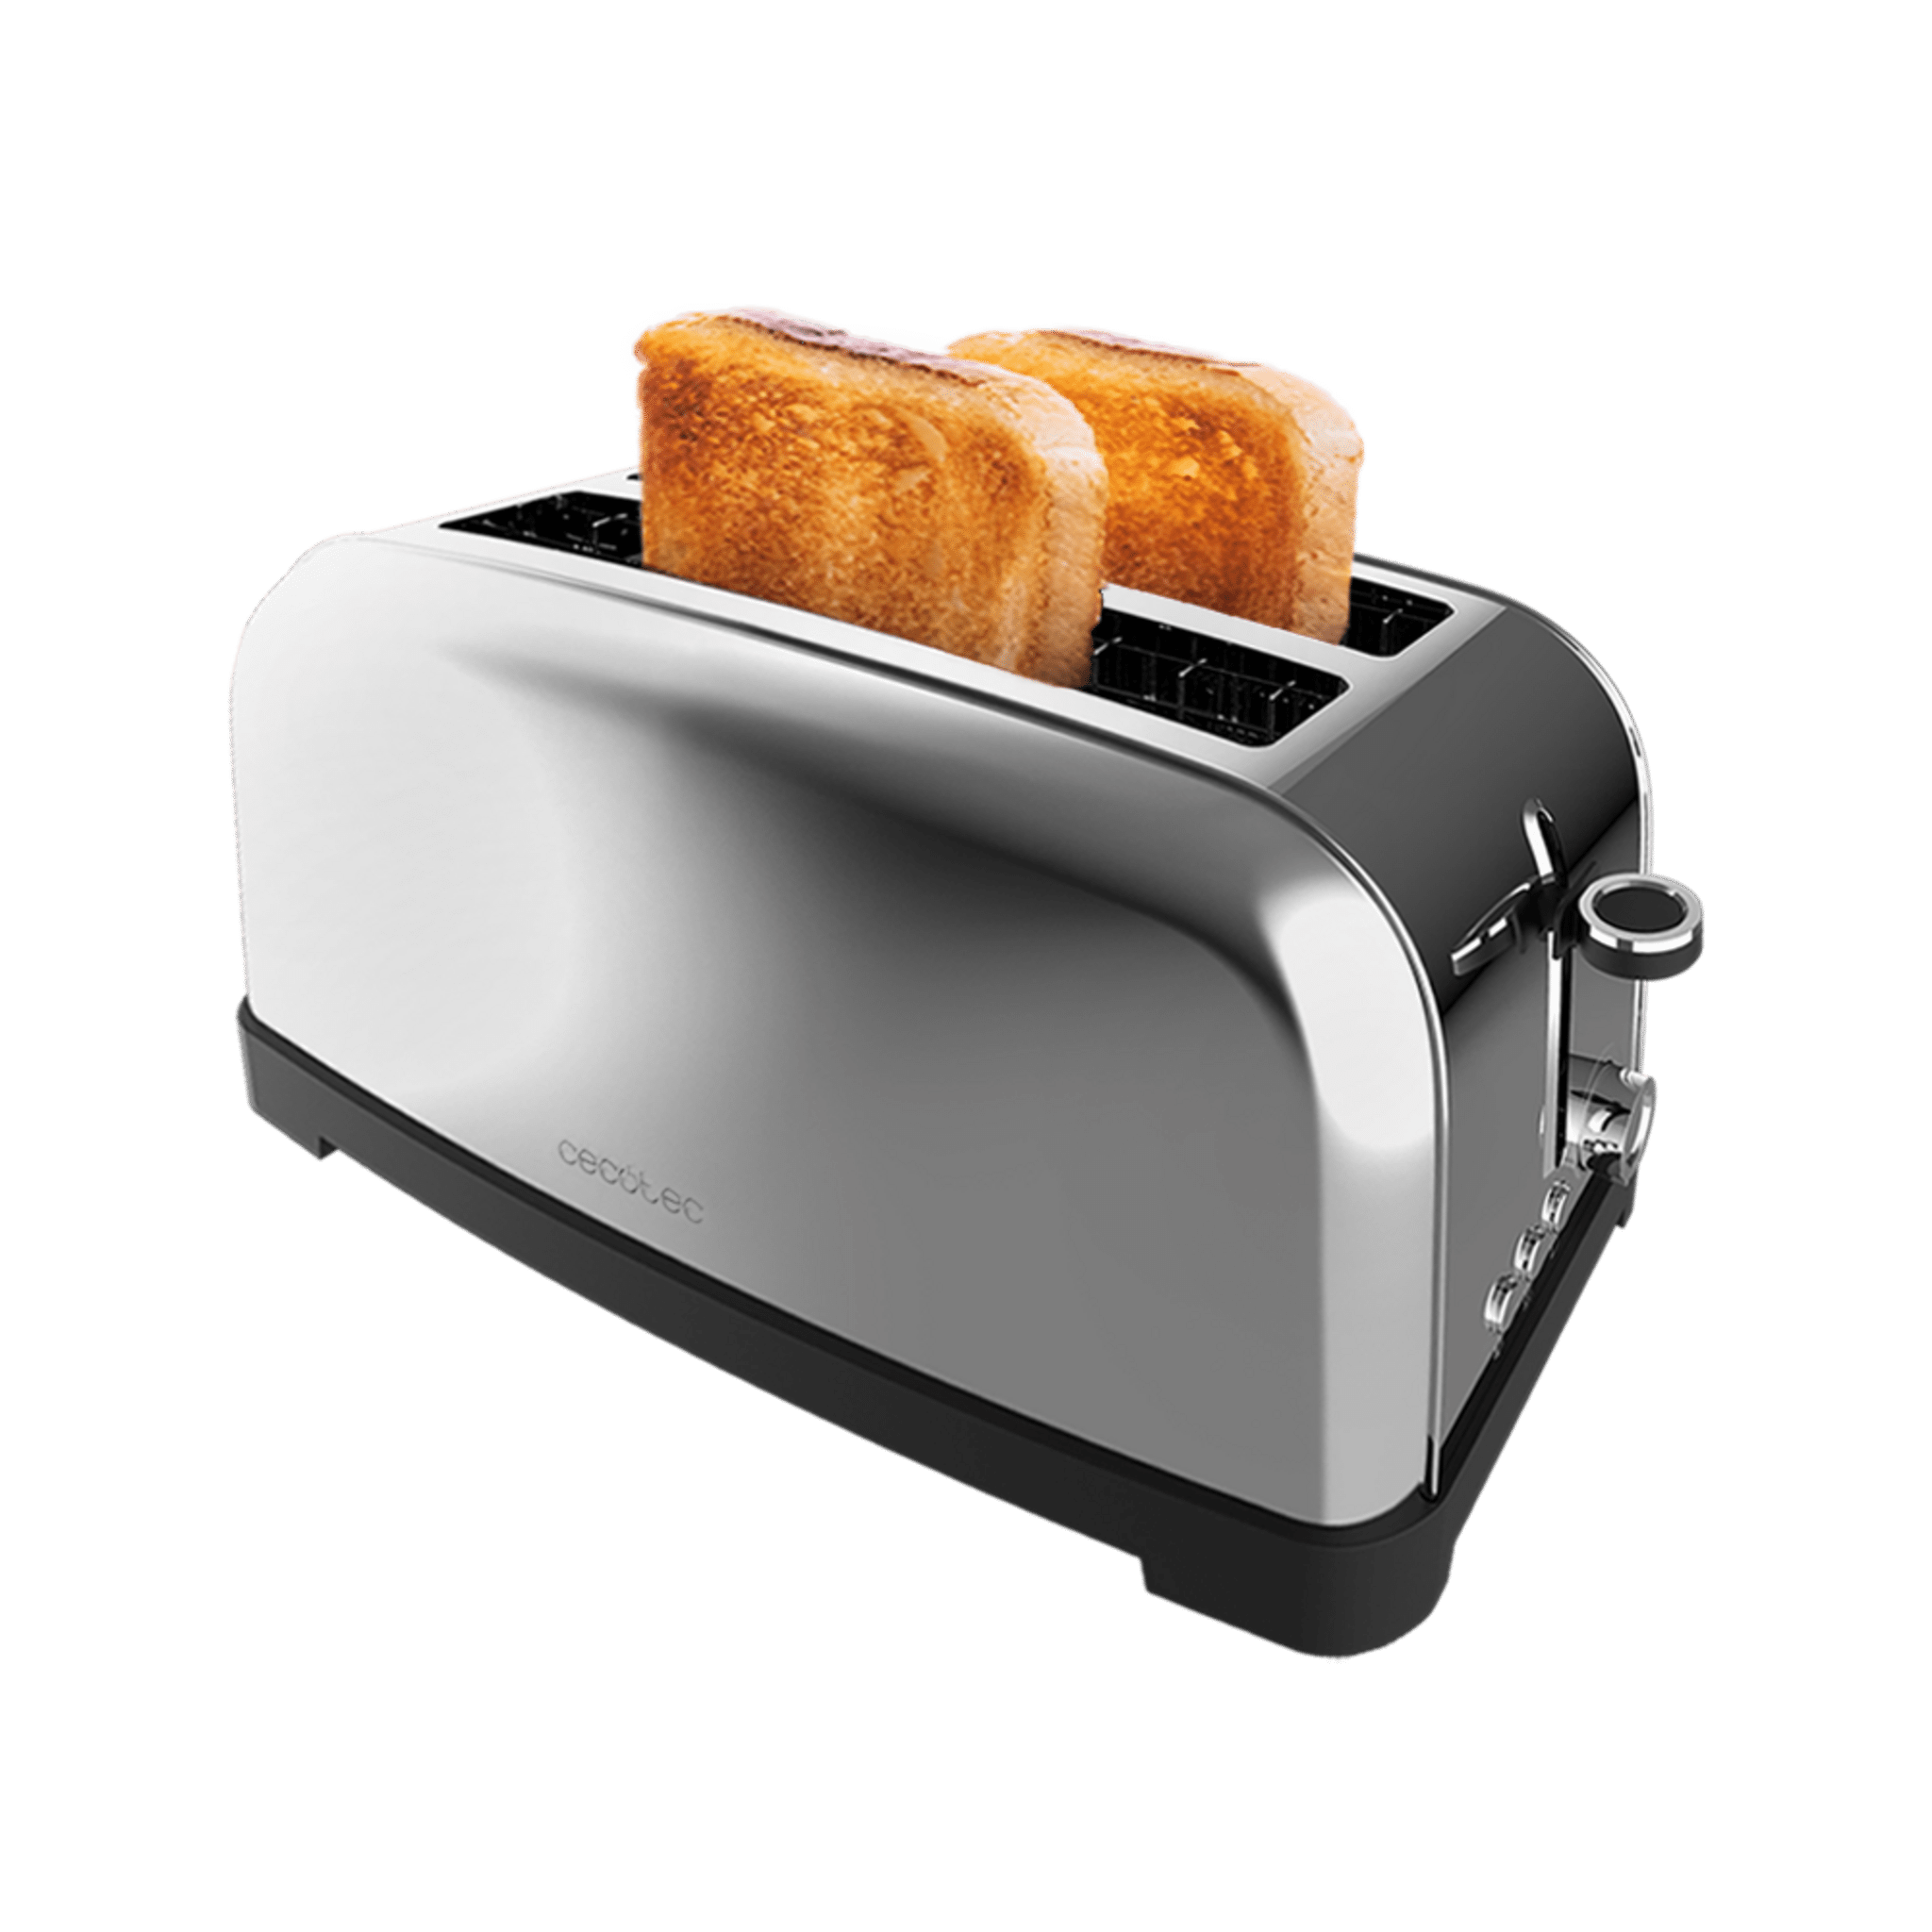 Cecotec Grille-pain vertical Toastin' time 850 Red Lite, 850 W, Capacité  pour 2 tartines, Fente large, Acier inox, Fonctions préconfigurées pour  plus de commodité, Contrôle du grillage personnalisable : :  Cuisine et Maison